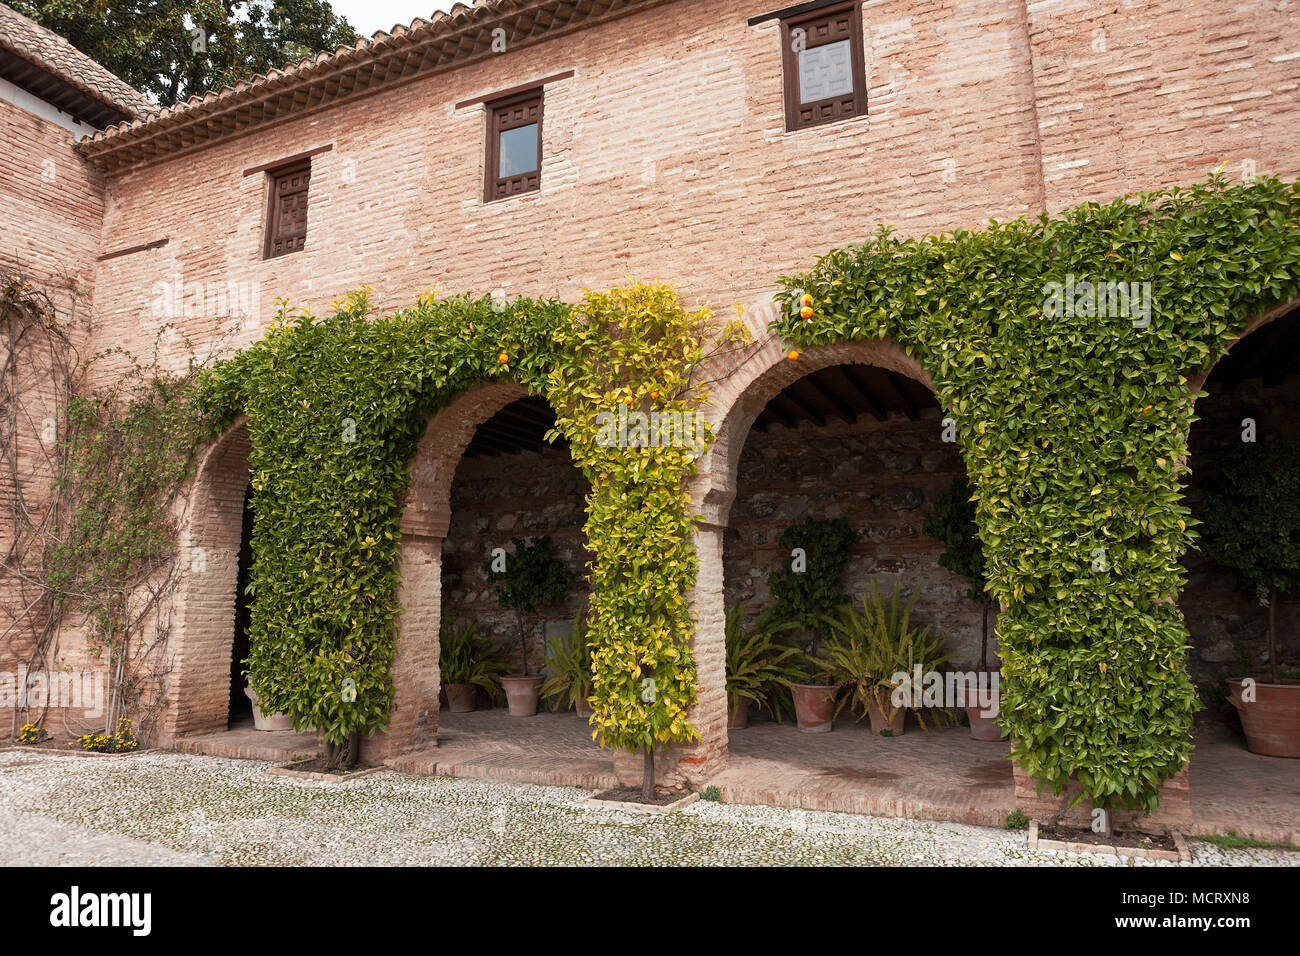 Casa de los Amigos, part of the Palacio del Generalife, La Alhambra, Granada, Andalusia, Spain Stock Photo